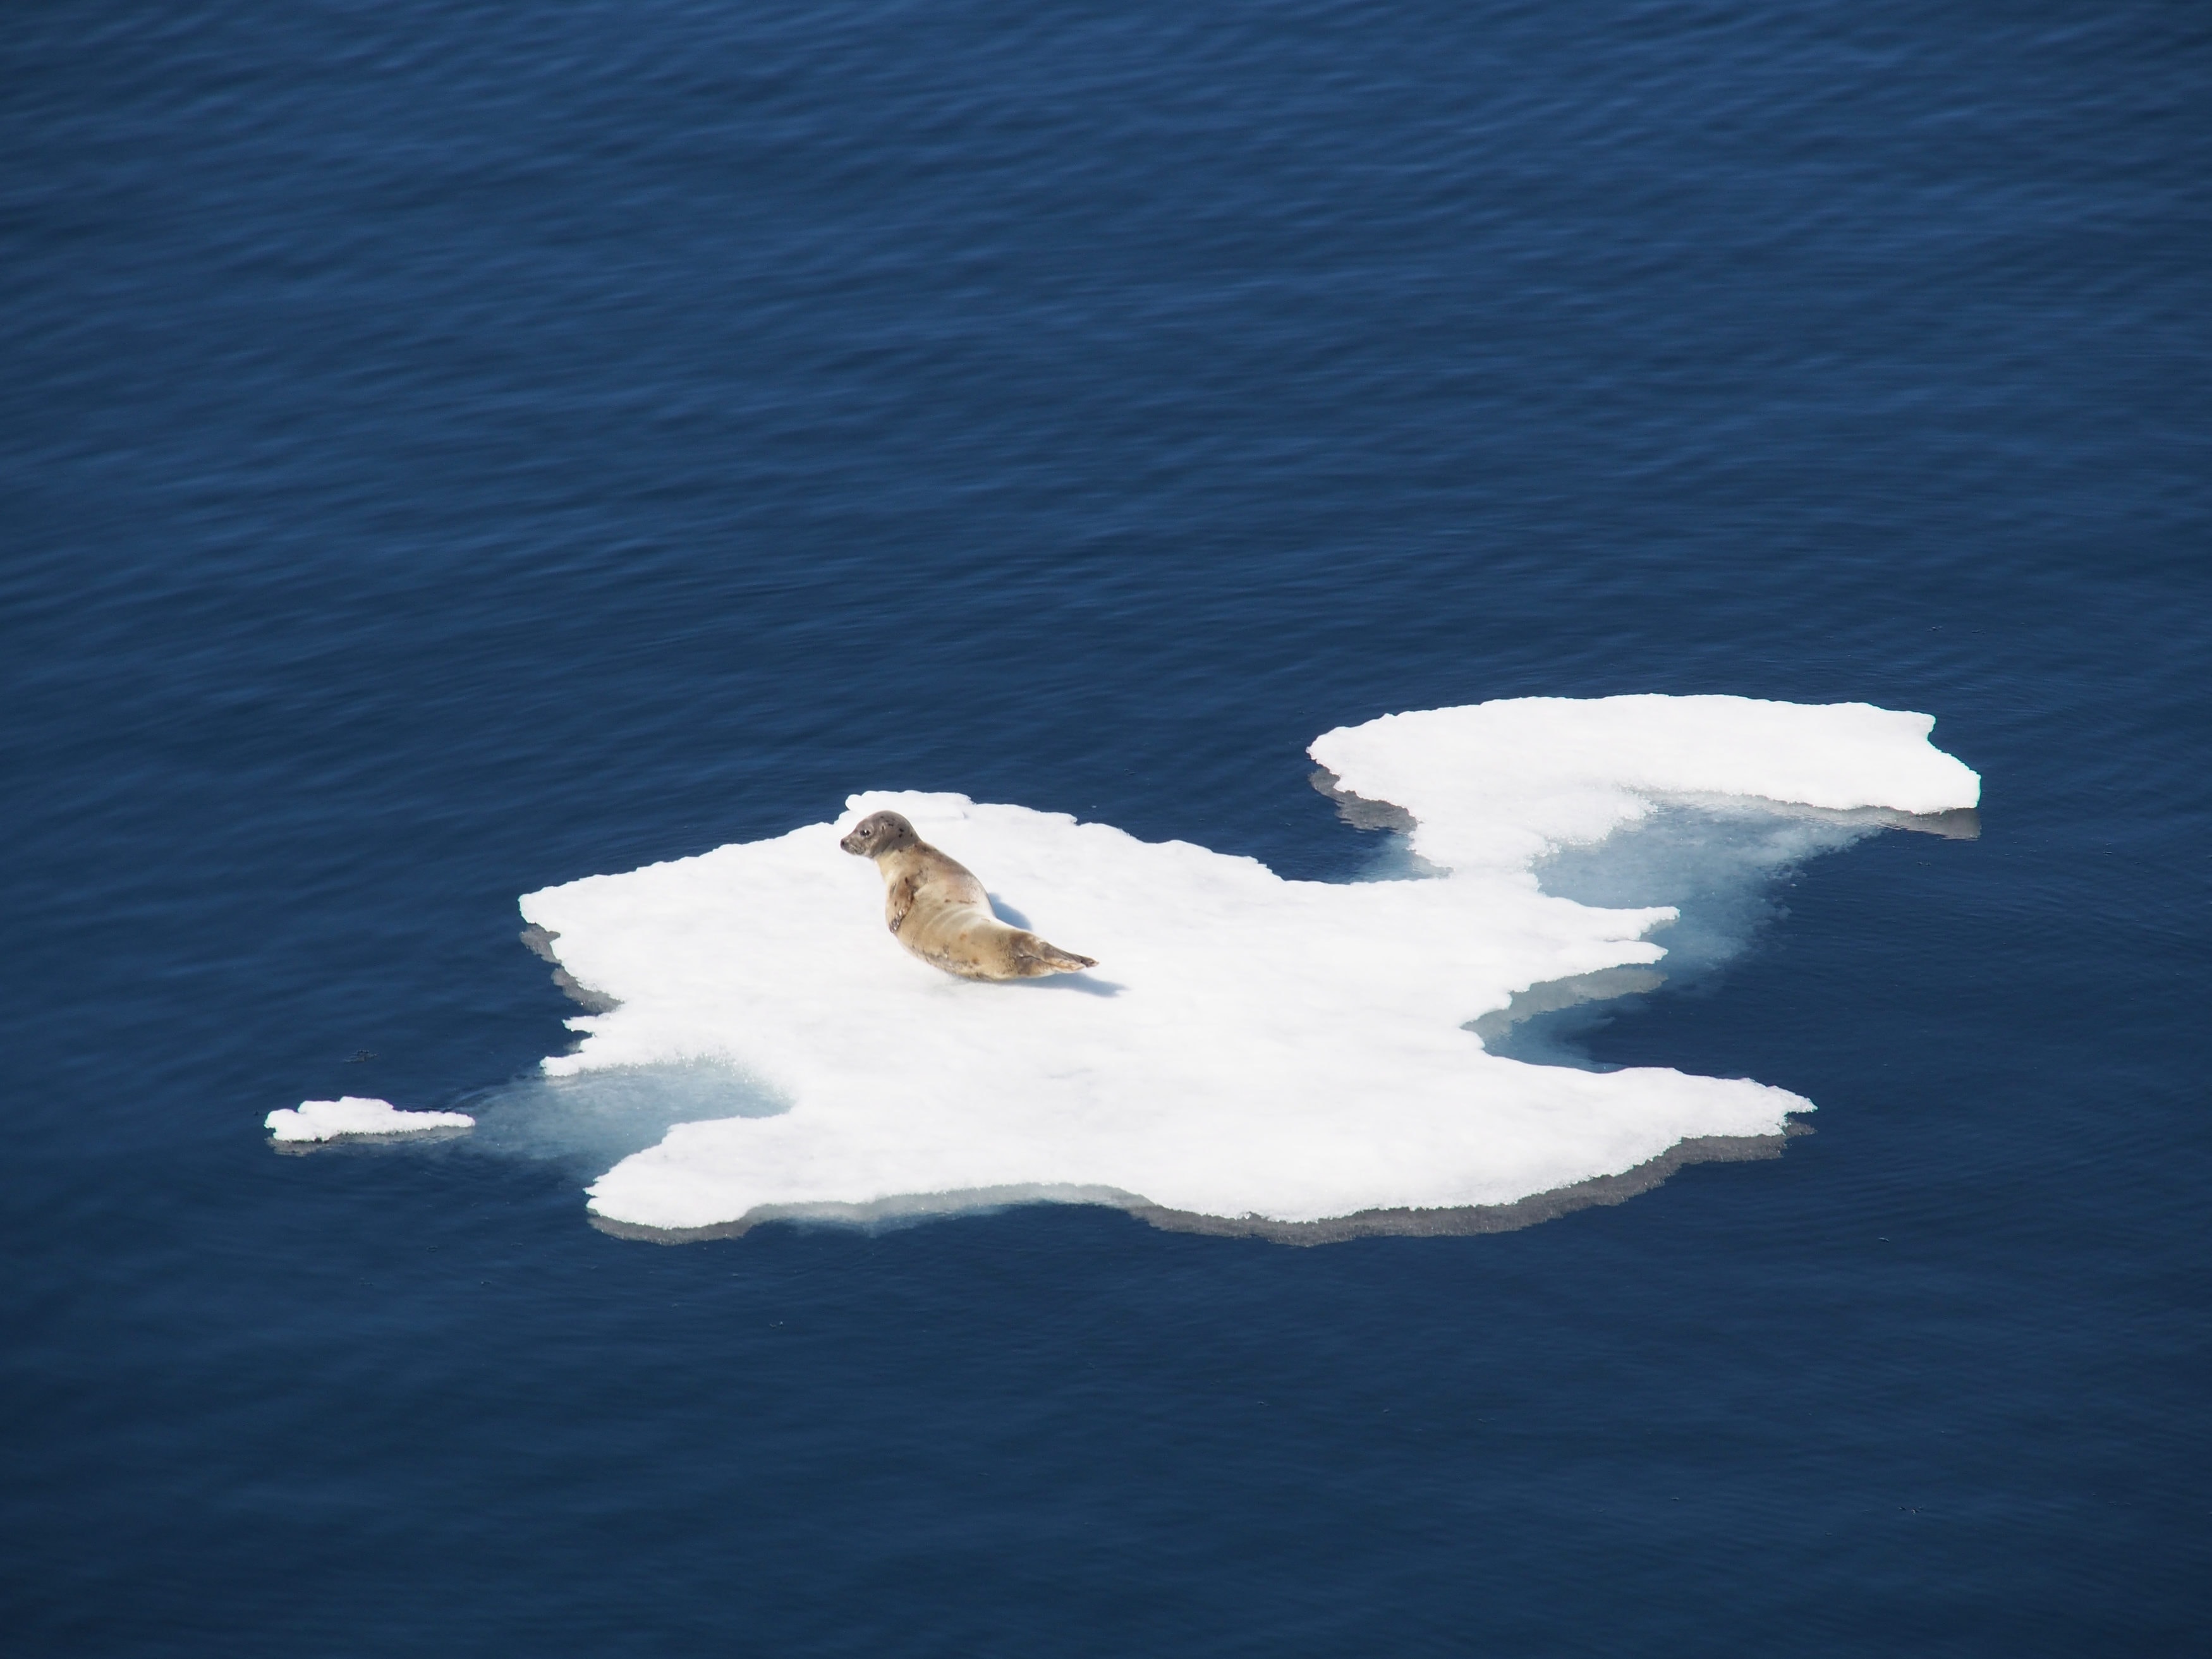 Ein häufiger Anblick in der kanadischen Arktis: eine Robbe die sich von den Strapazen auf einer Eisscholle ausruht.